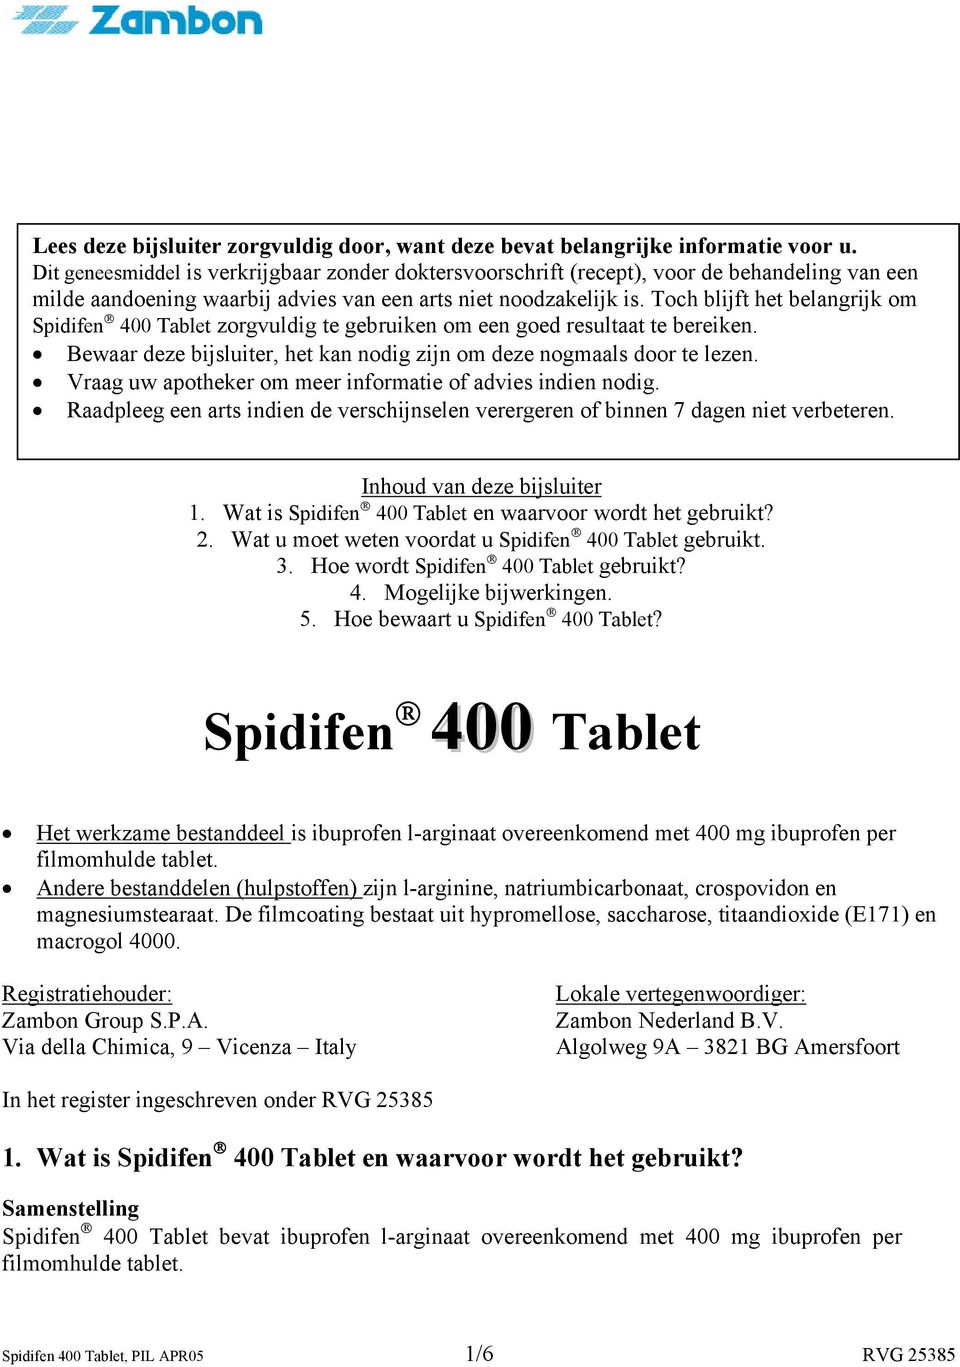 Toch blijft het belangrijk om Spidifen 400 Tablet zorgvuldig te gebruiken om een goed resultaat te bereiken. Bewaar deze bijsluiter, het kan nodig zijn om deze nogmaals door te lezen.